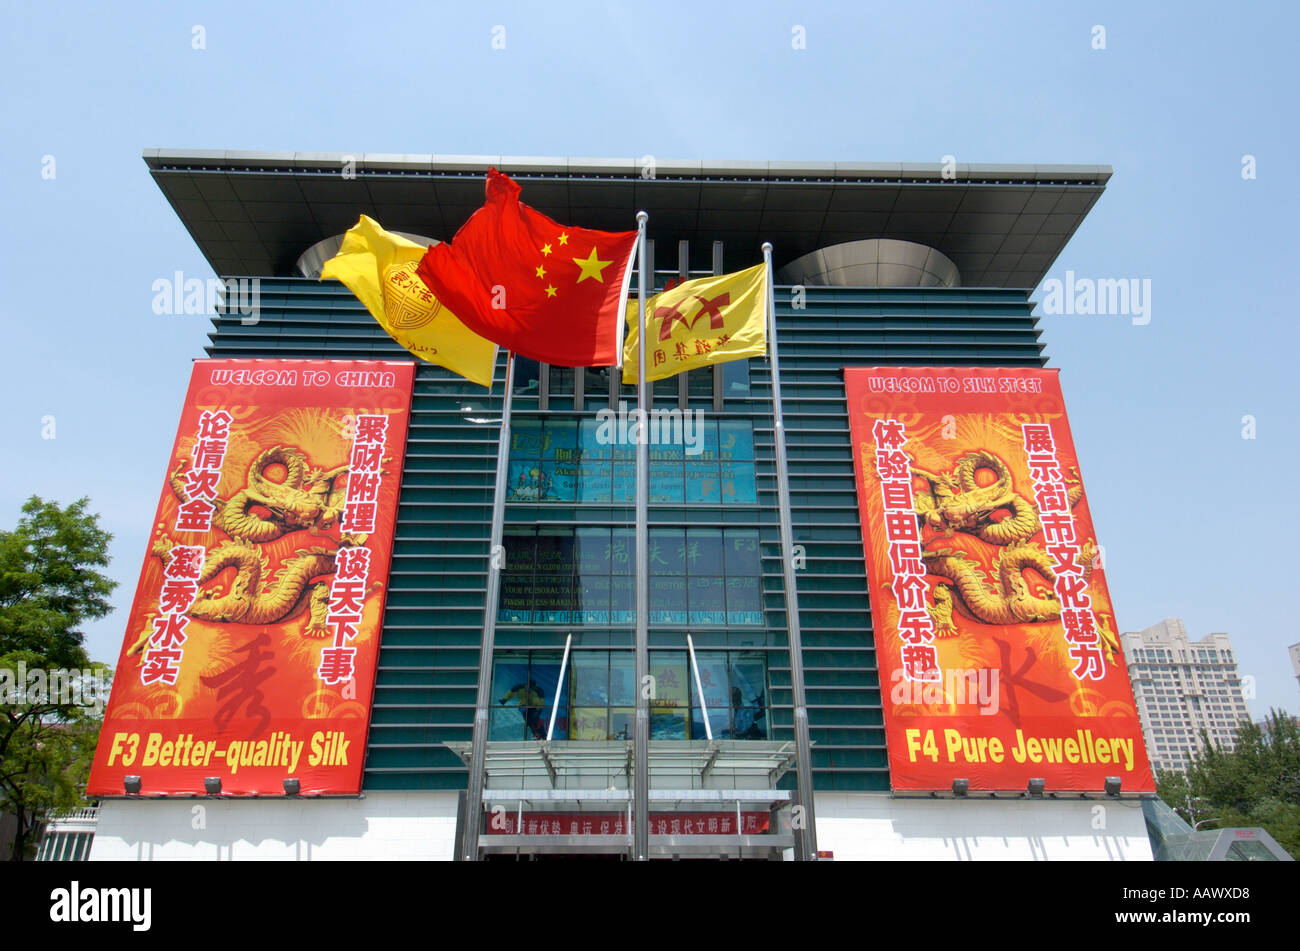 Le nouveau centre commercial de la soie dans le centre de Pékin est une destination populaire pour les touristes et les habitants d'acheter des produits de contrefaçon Banque D'Images